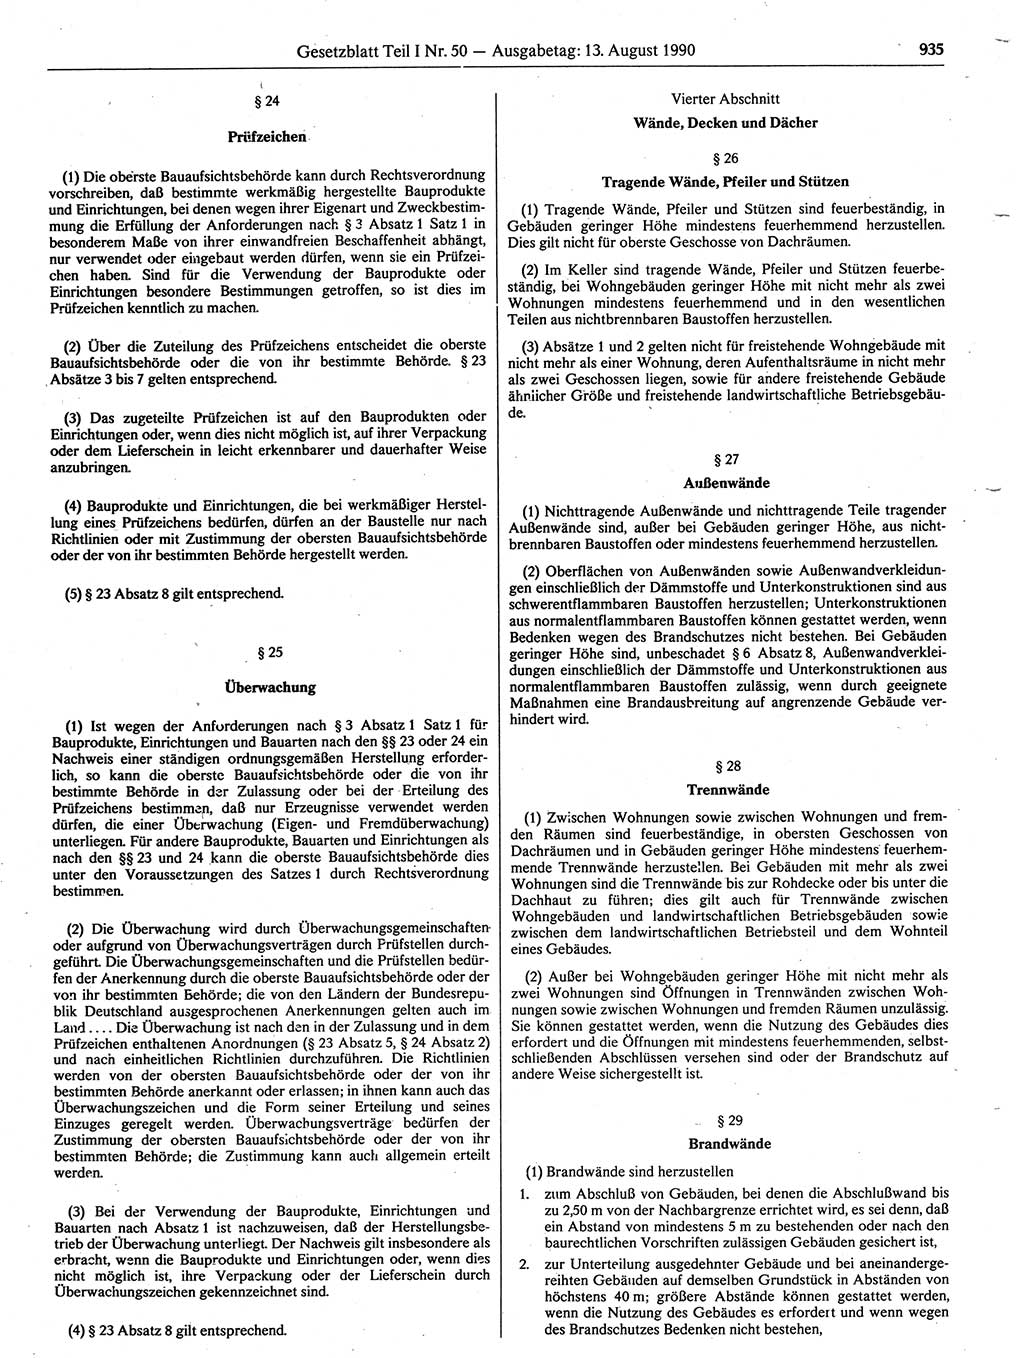 Gesetzblatt (GBl.) der Deutschen Demokratischen Republik (DDR) Teil Ⅰ 1990, Seite 935 (GBl. DDR Ⅰ 1990, S. 935)